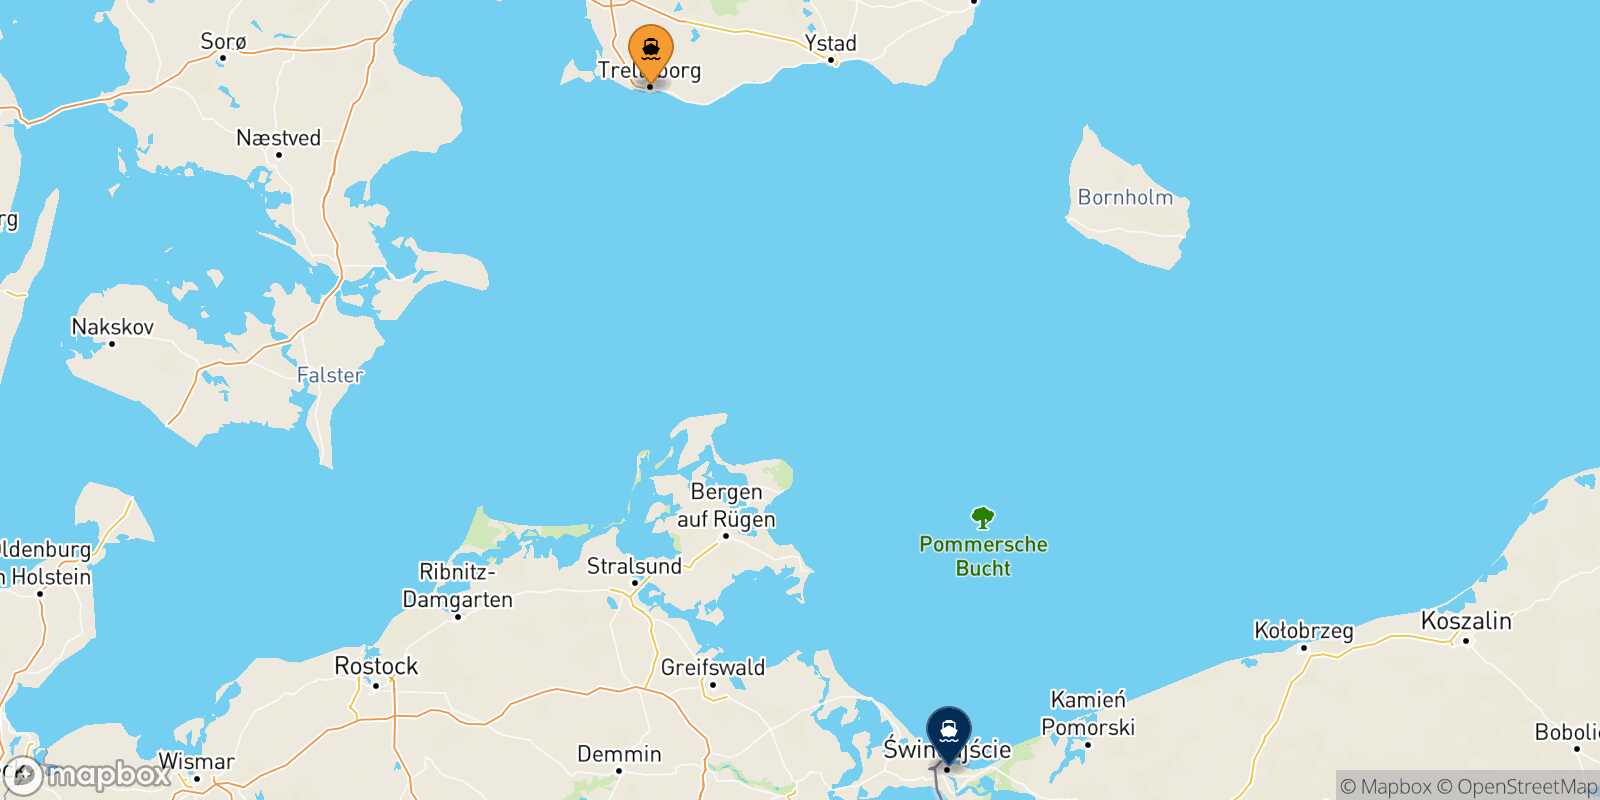 Mappa dei porti collegati con  Swinoujscie